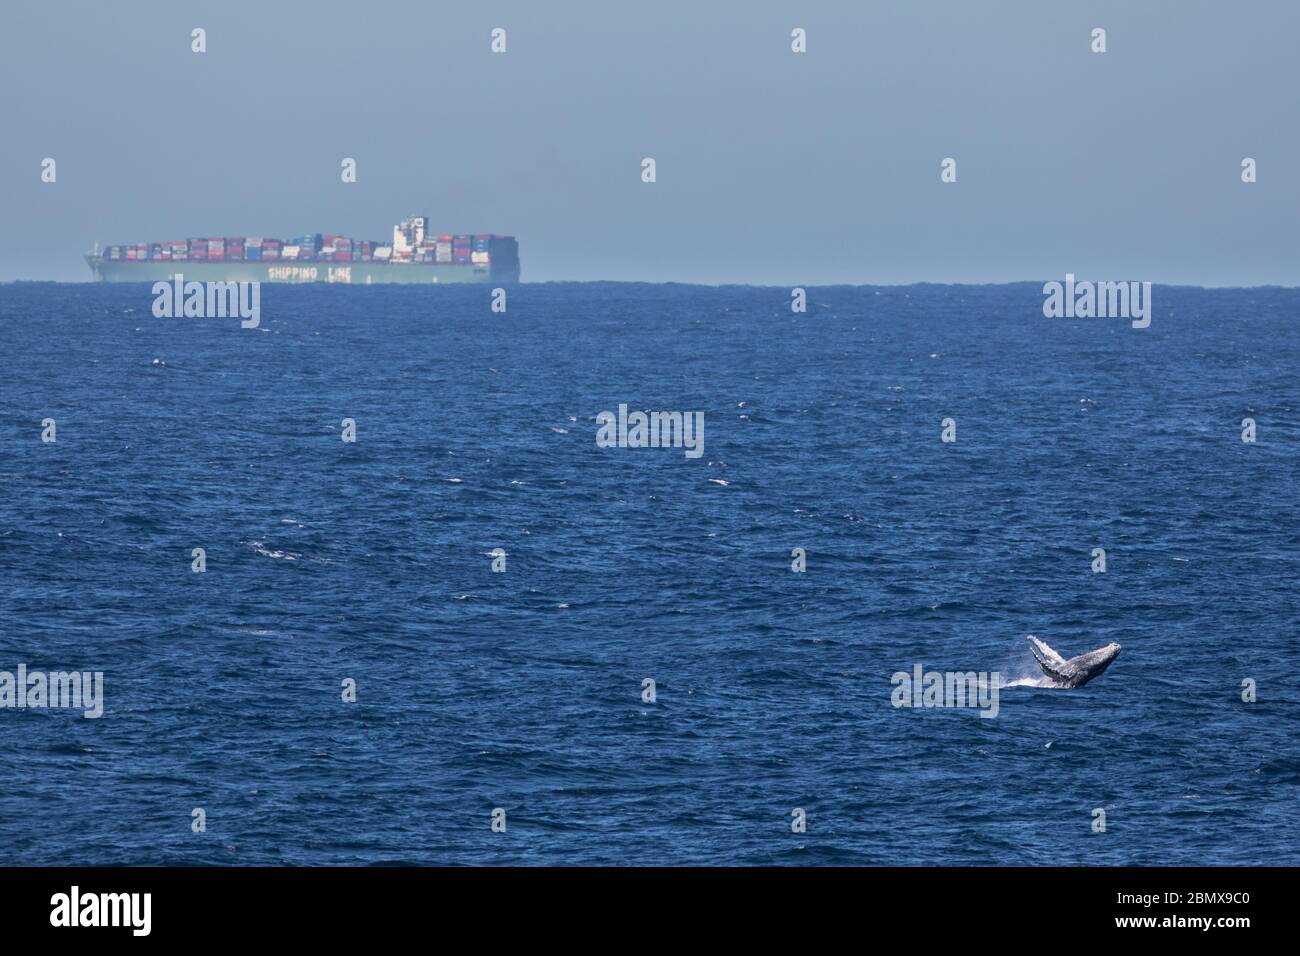 Schifffahrtswege sind in der Agulhas-Strömung, Indischer Ozean, Südafrika, eine wichtige Zugroute für Buckelwale, Megaptera novaeangliae, stark befahren. Stockfoto